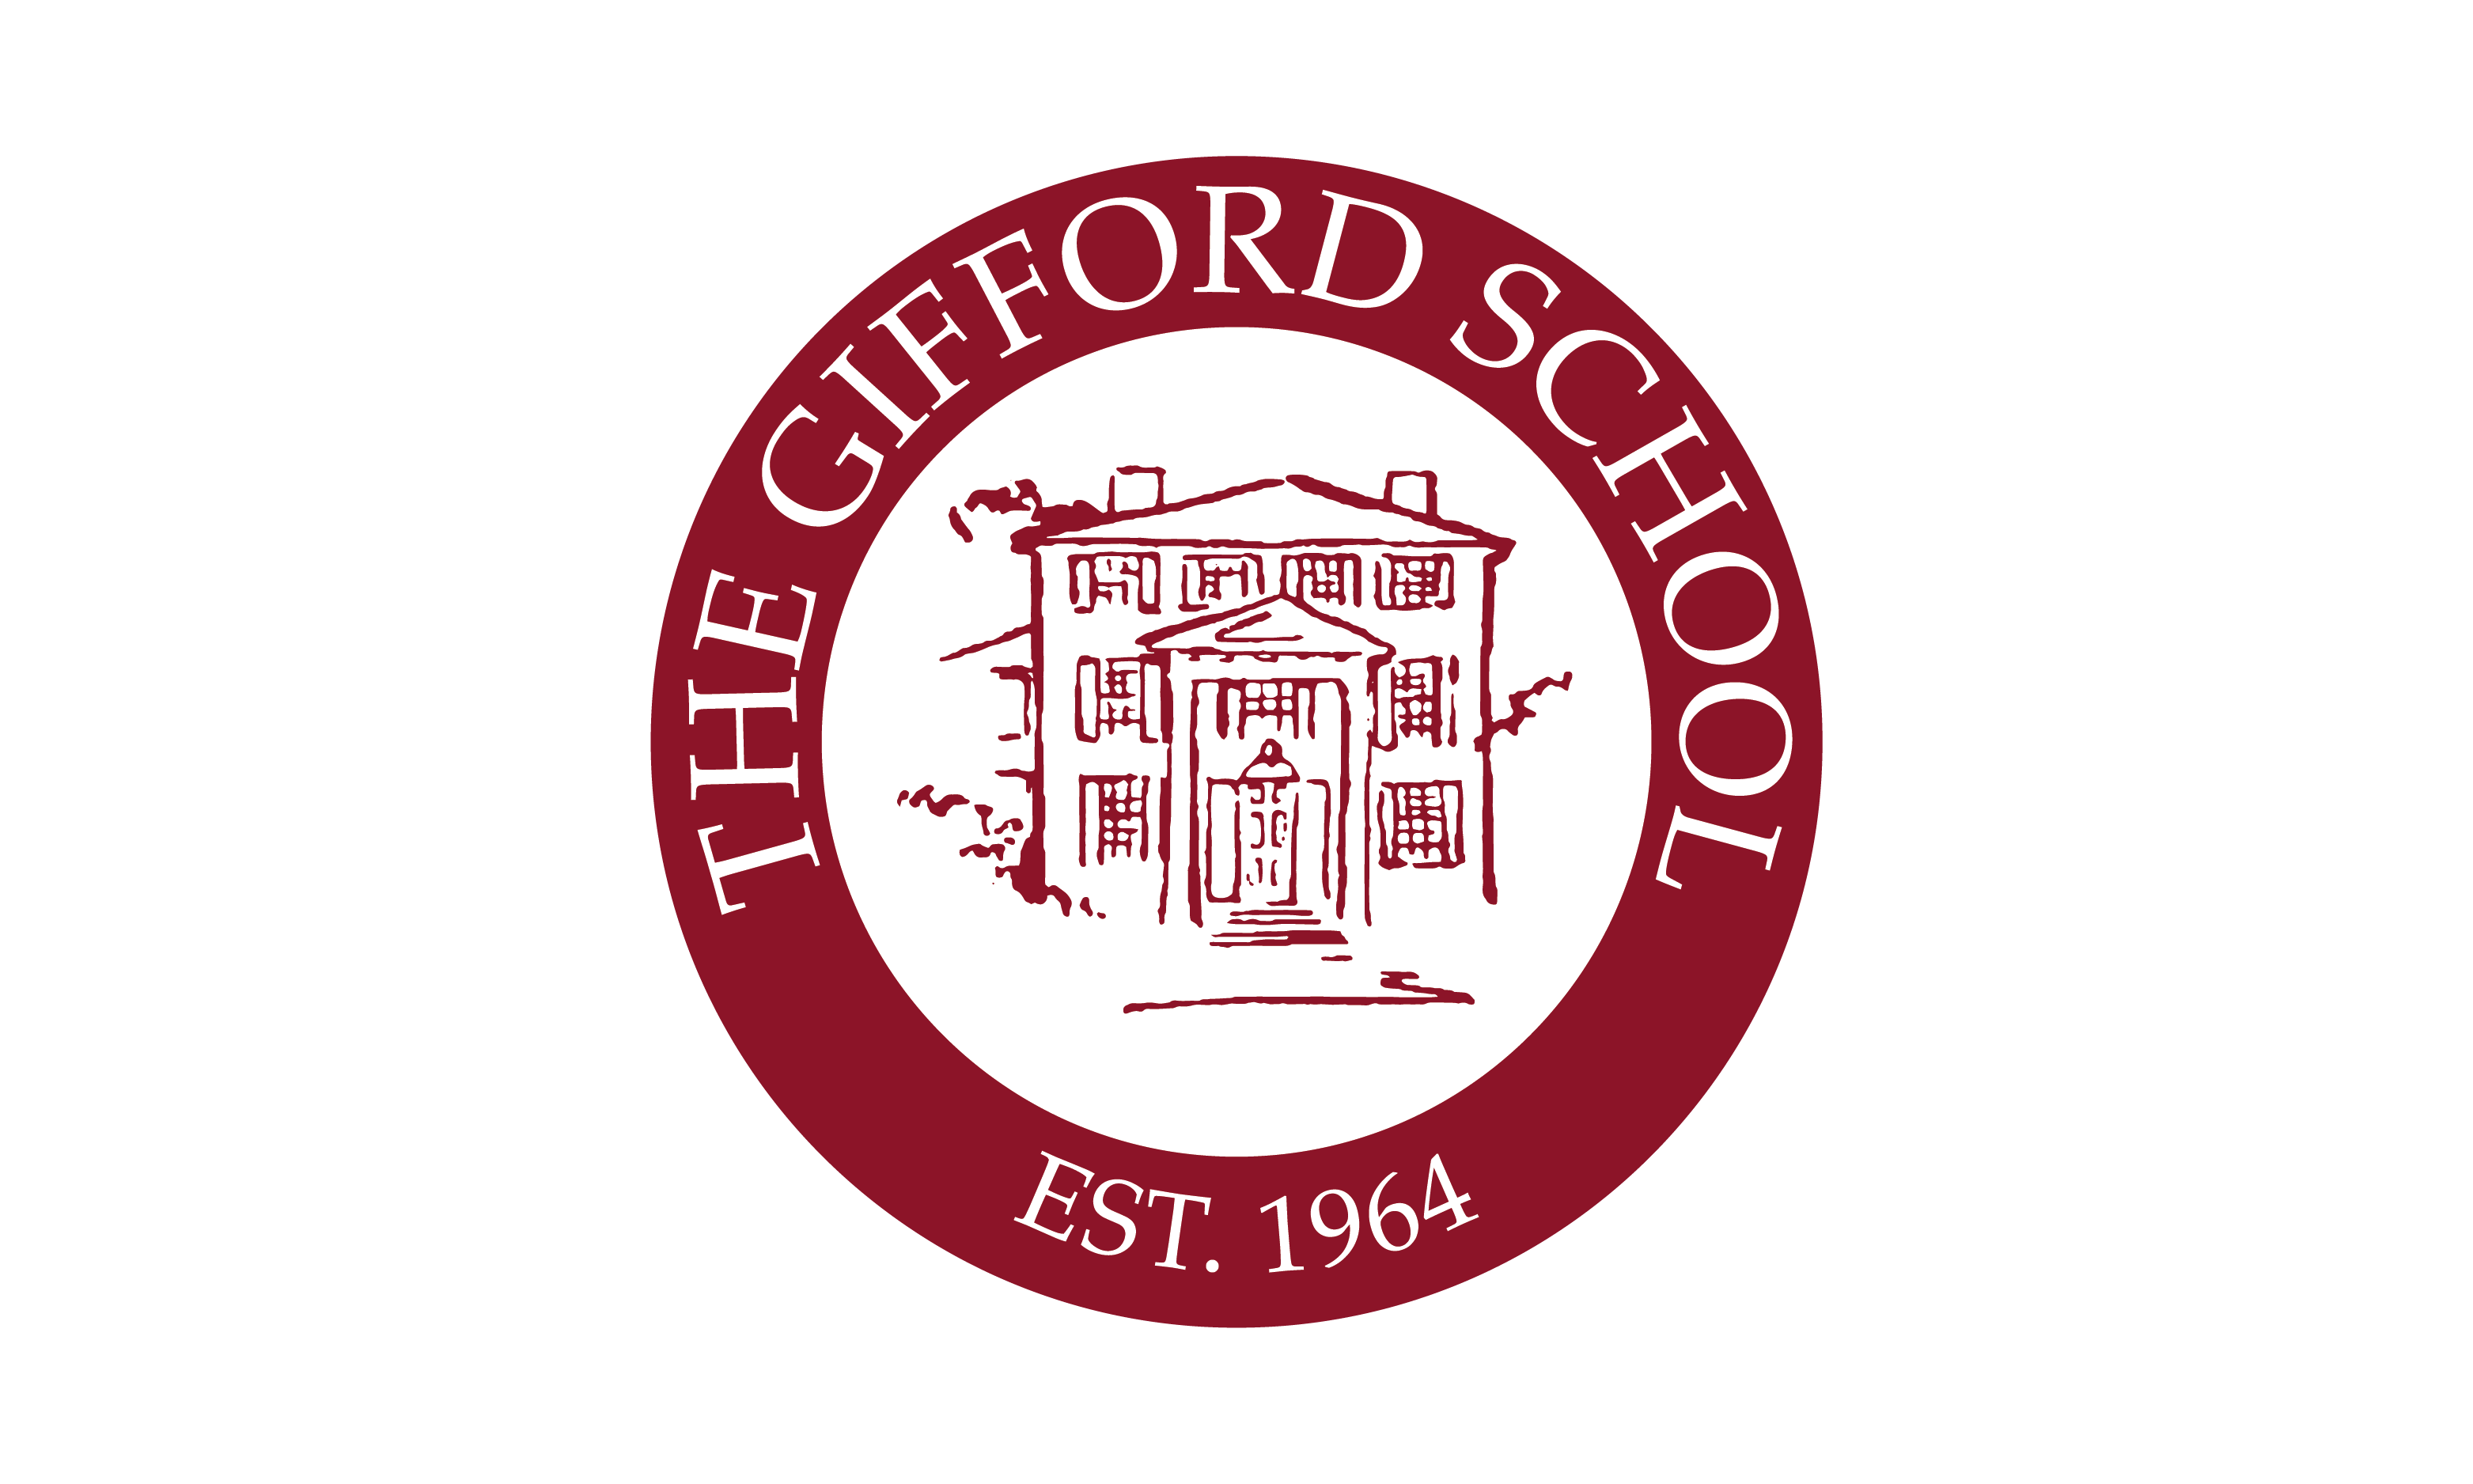 The Gifford School